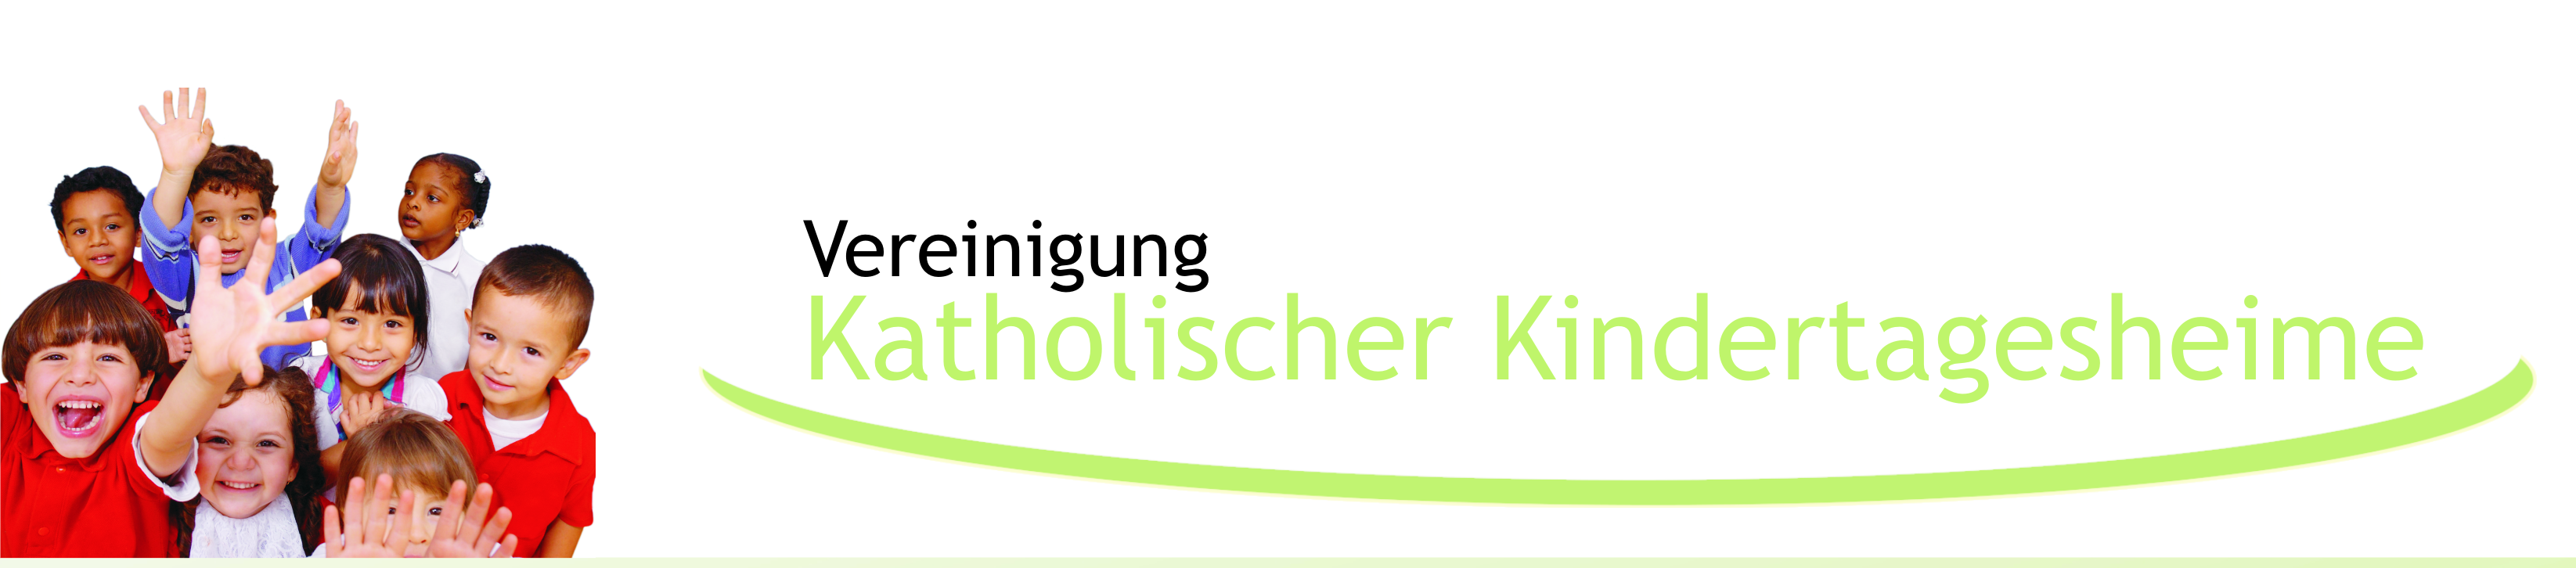 Logo: Vereinigung Katholischer Kindertagesheime